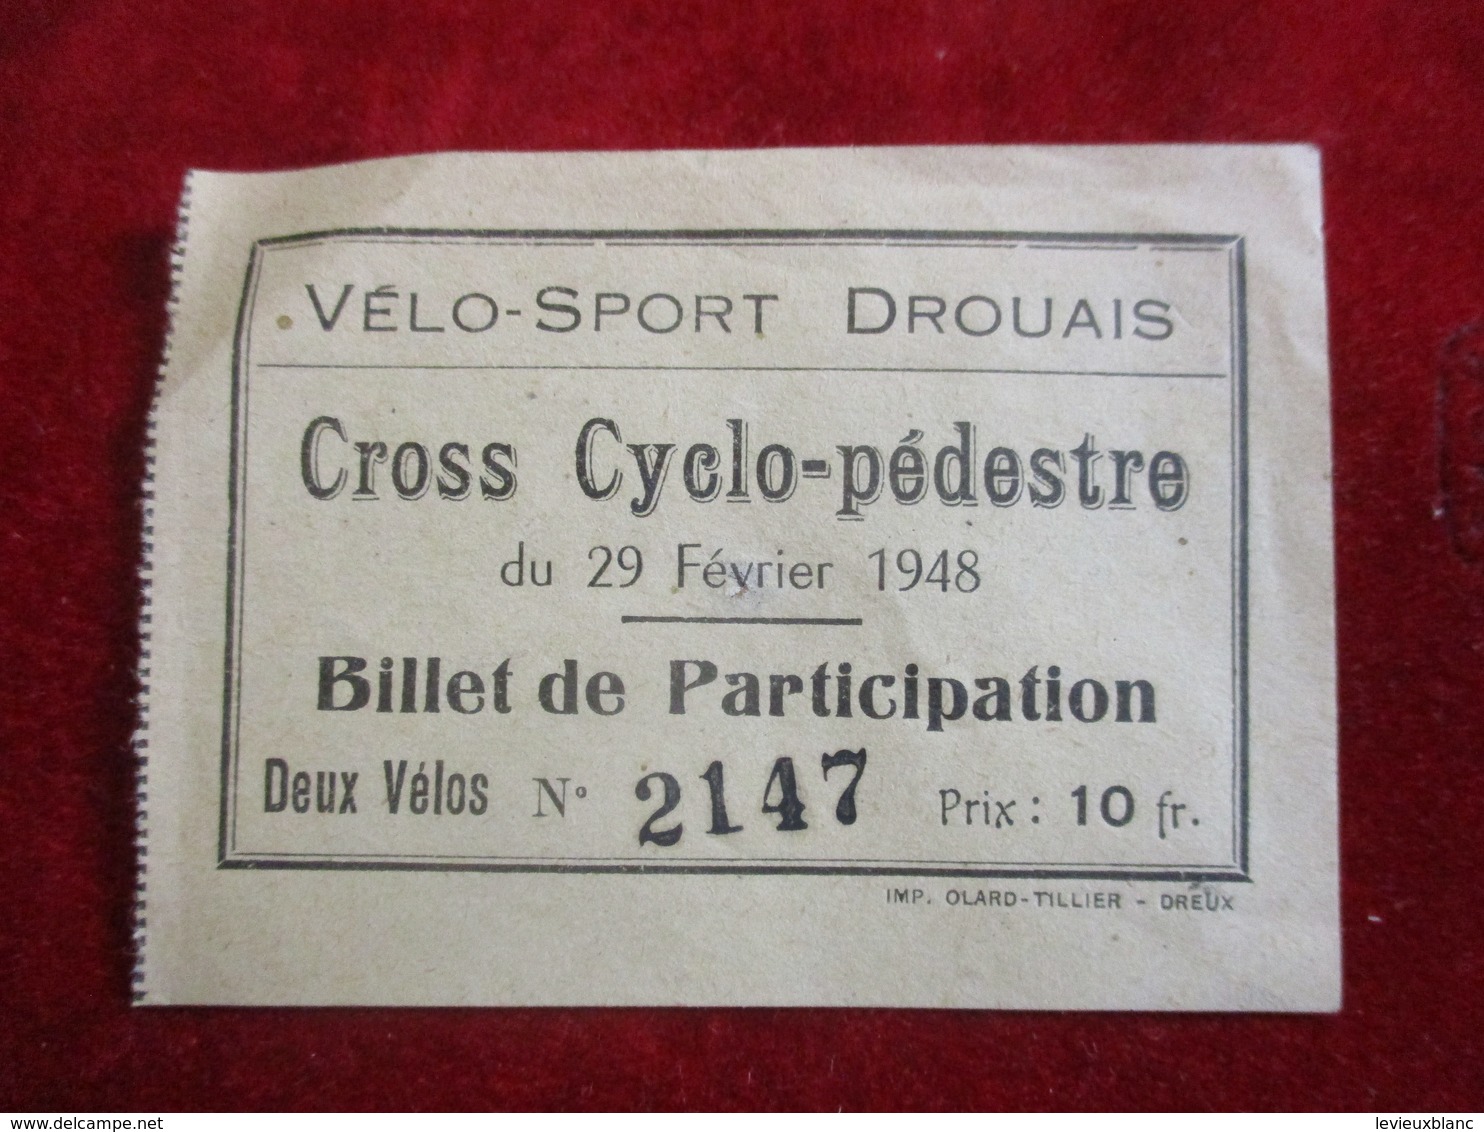 Billet De Participation/ Vélo-Sport Drouais / Cross Cyclo-pédestre/ DREUX /Ollard Tillier/ 1948   TCK168 - Cyclisme